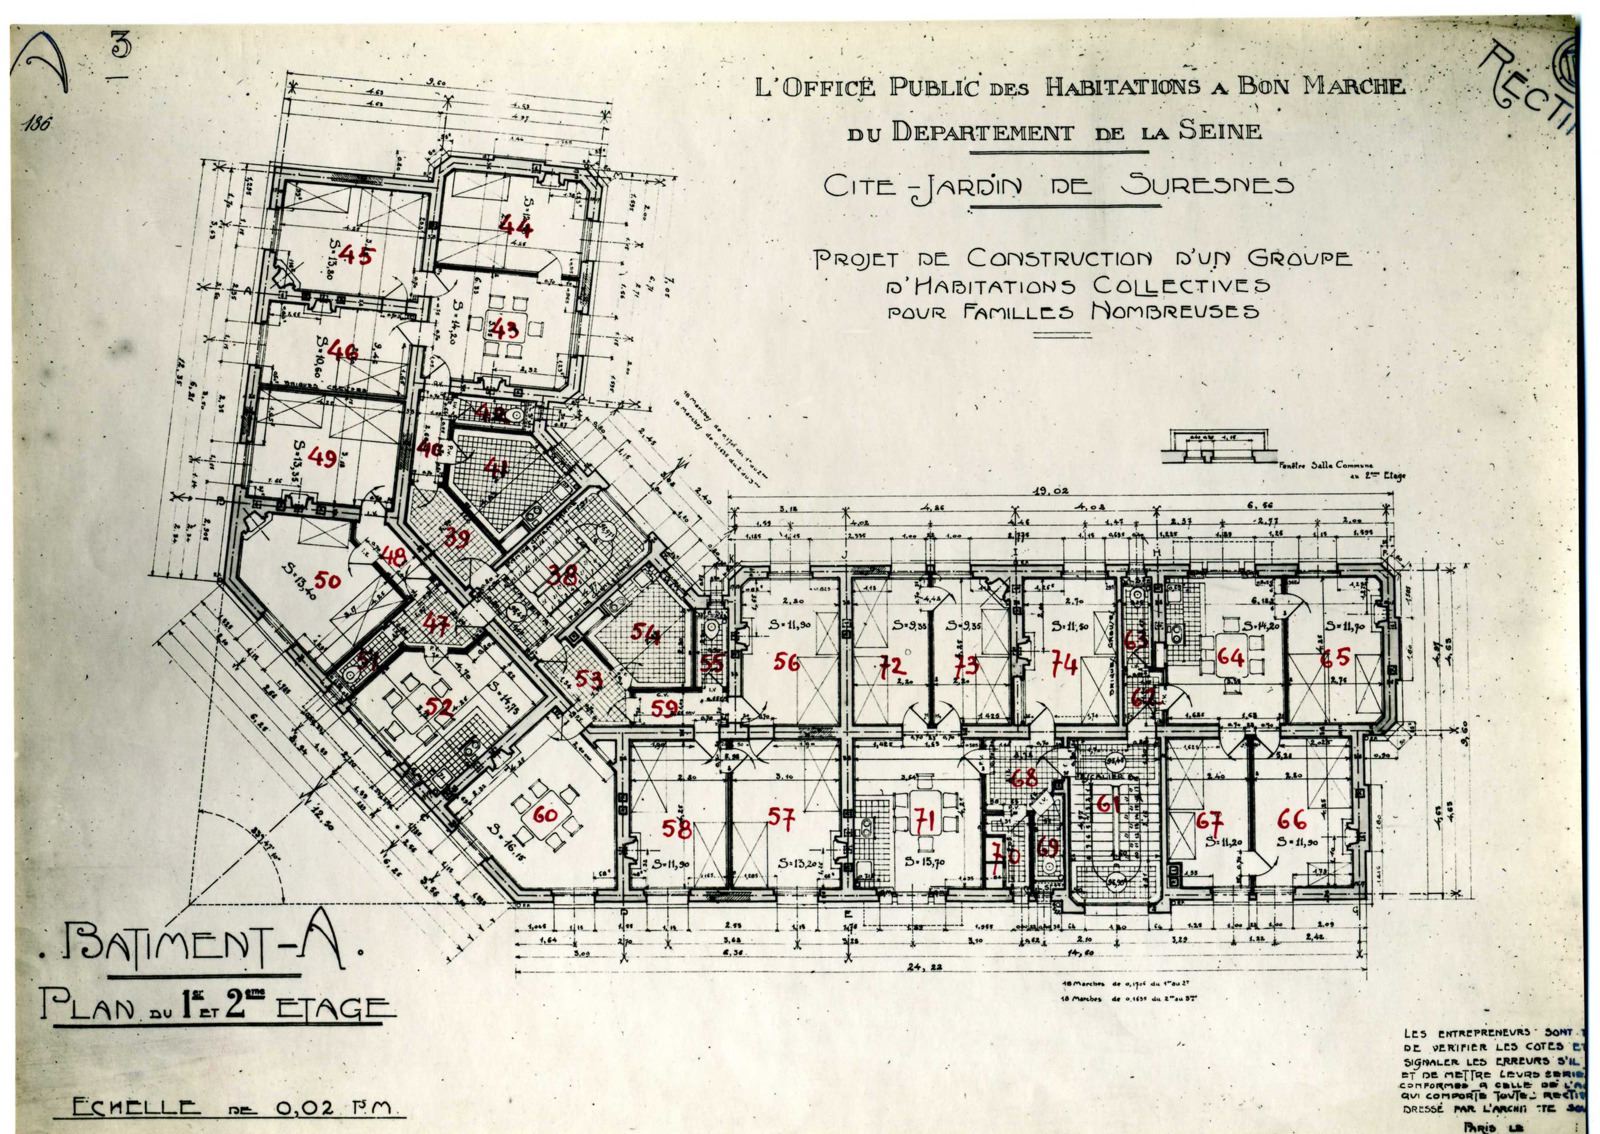 Plan du 1er et 2ème étage du bâtiment A, Cité-jardins, habitations collectives pour familles nombreuses.